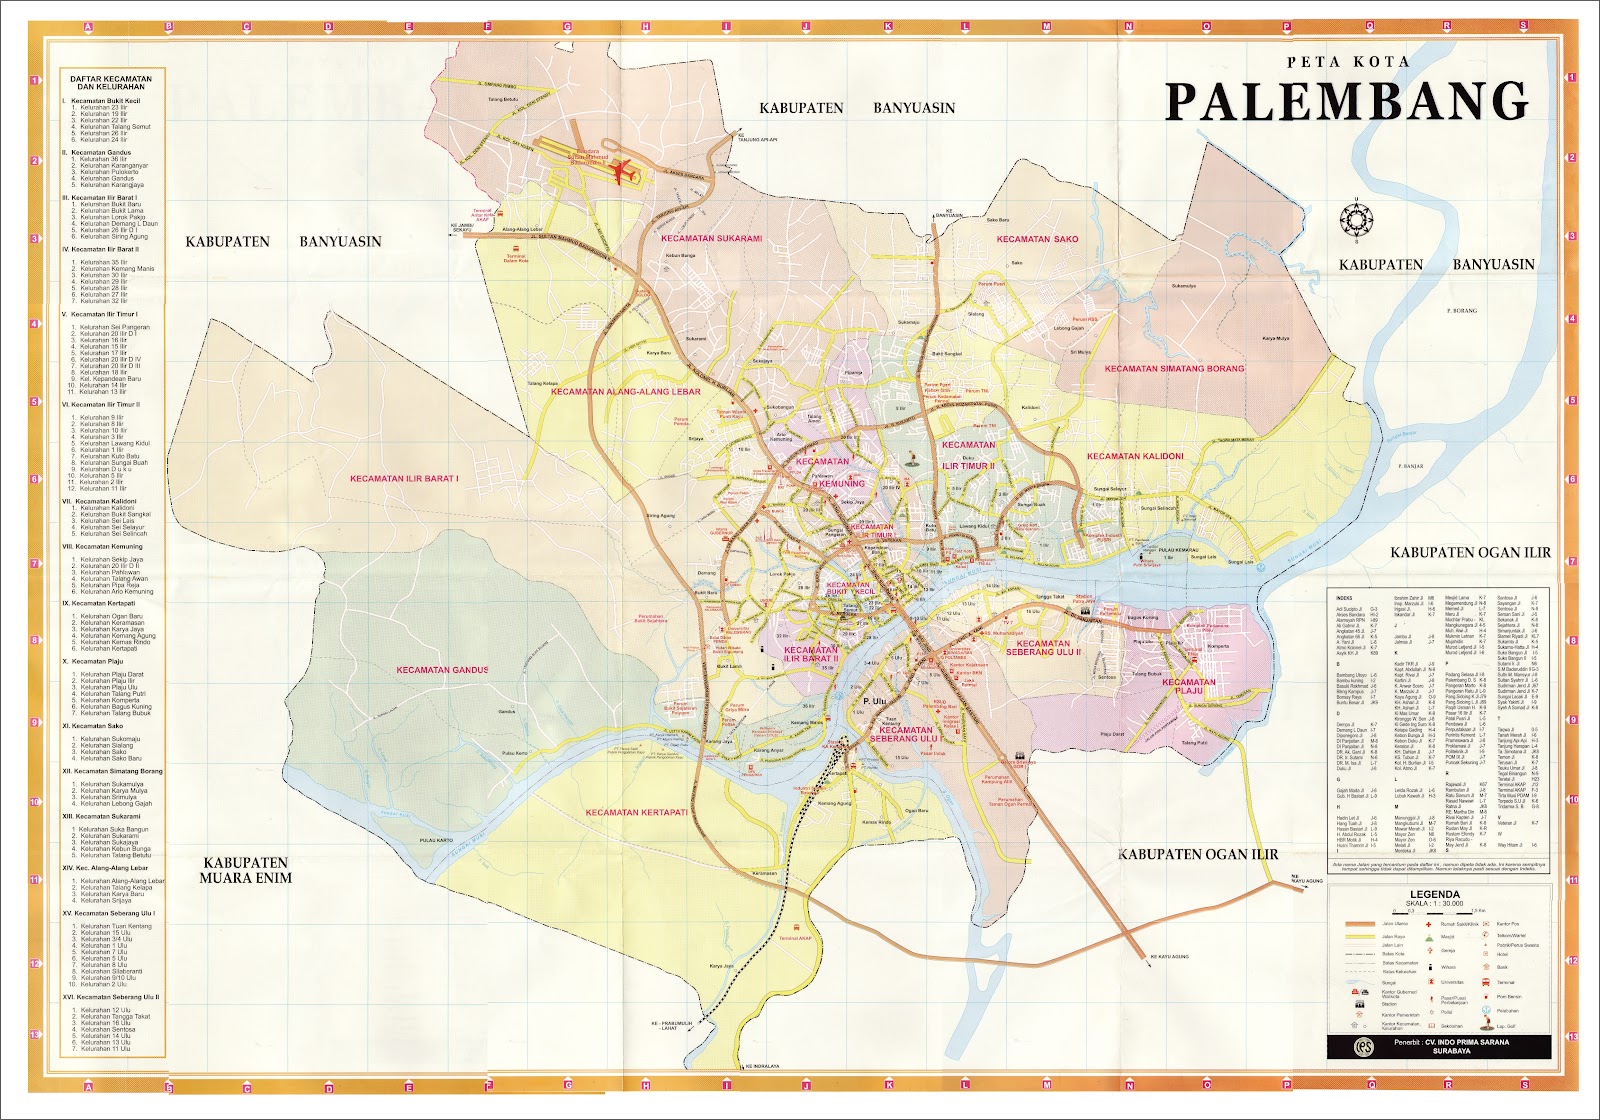 Peta Kota Palembang Hd - IMAGESEE